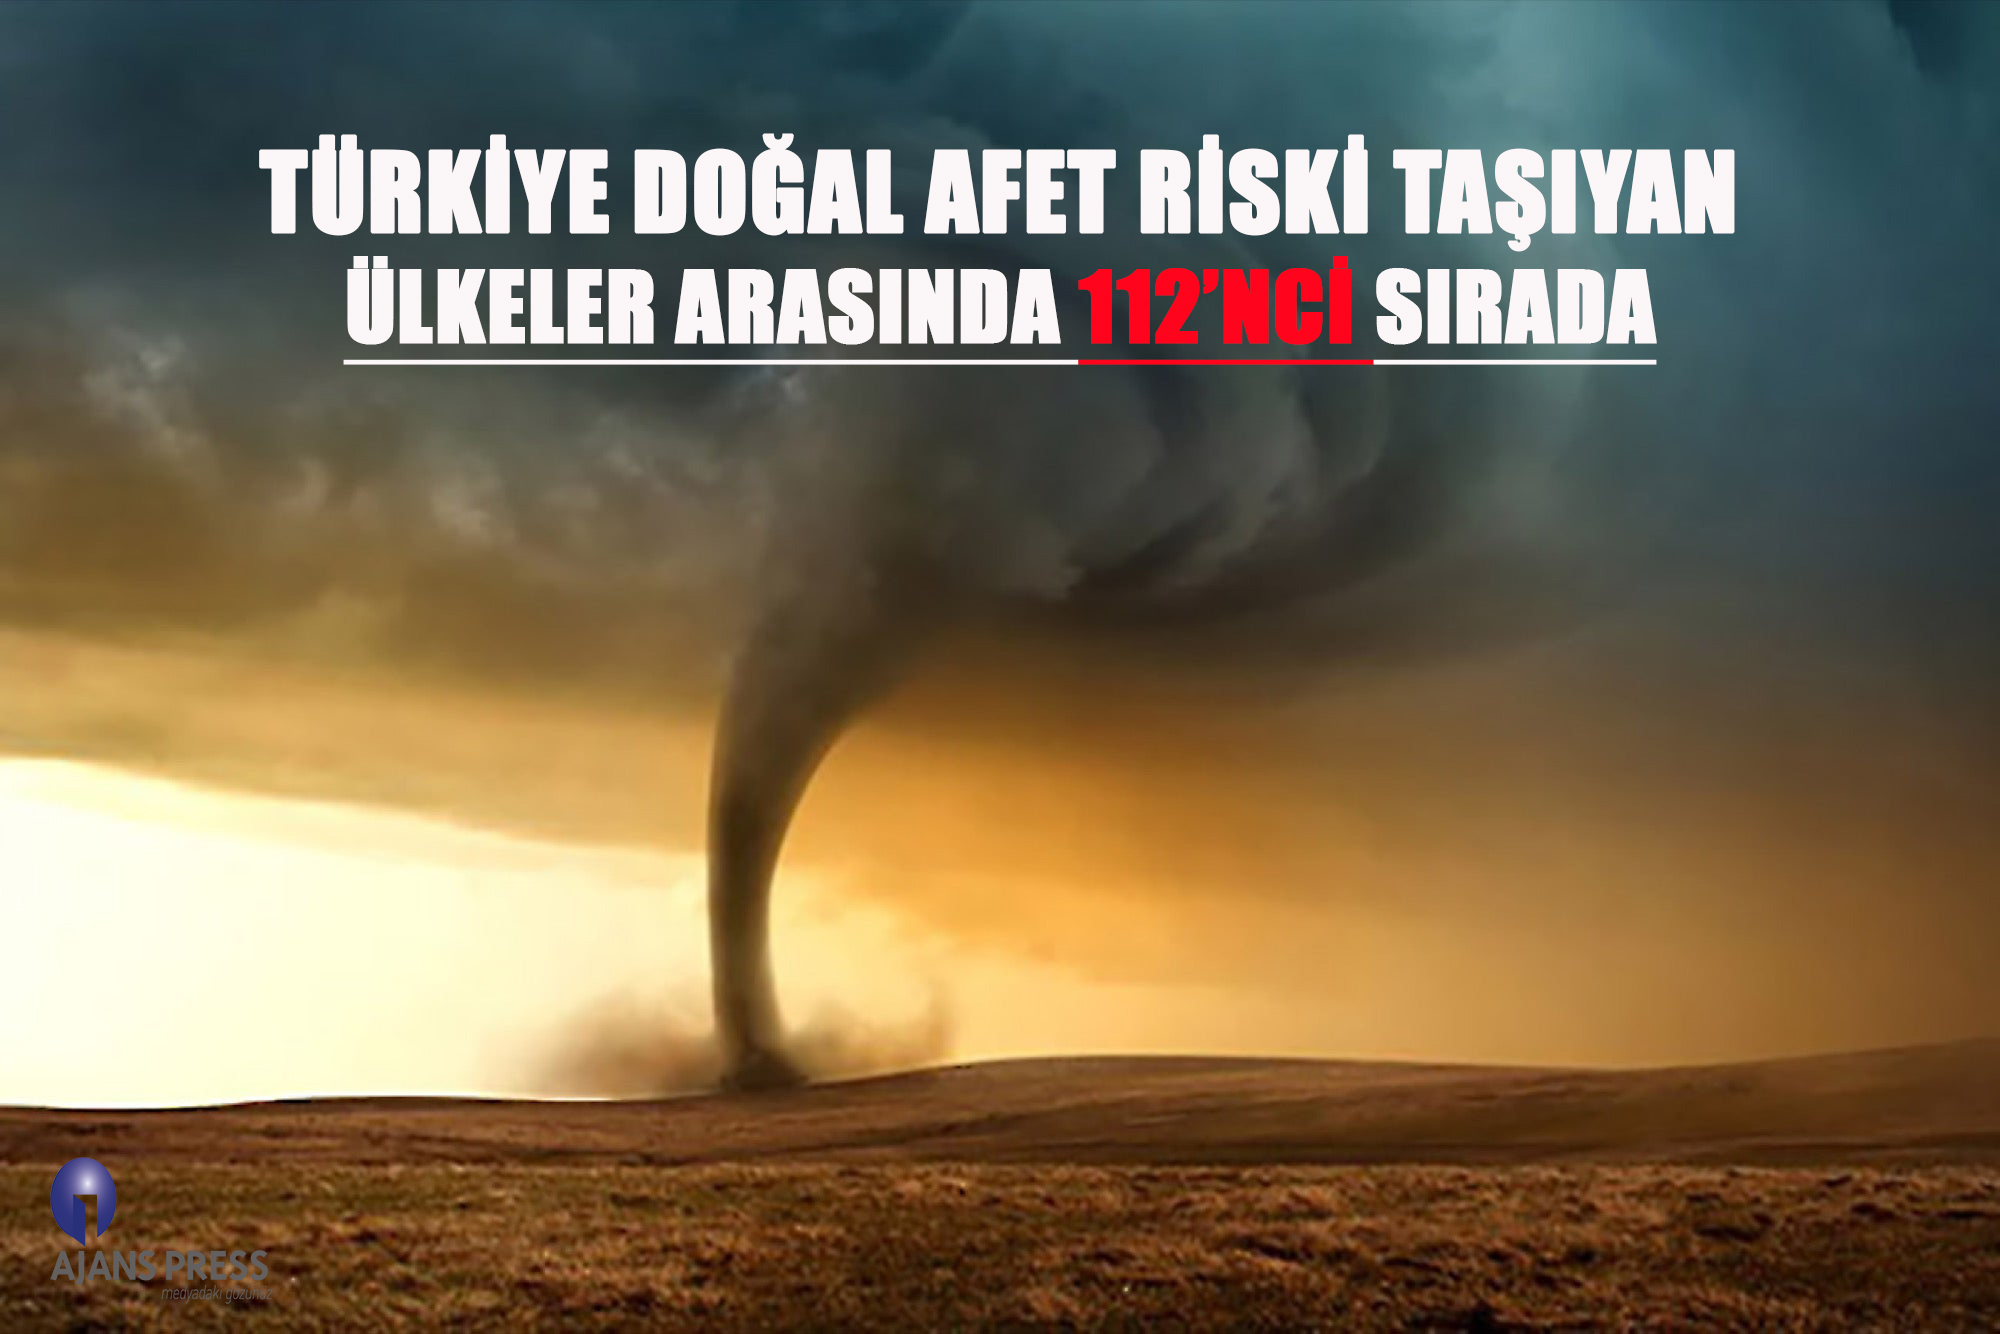 Türkiye Doğal Afet Riski Taşıyan Ülkeler Arasında 112’ncı Sırada